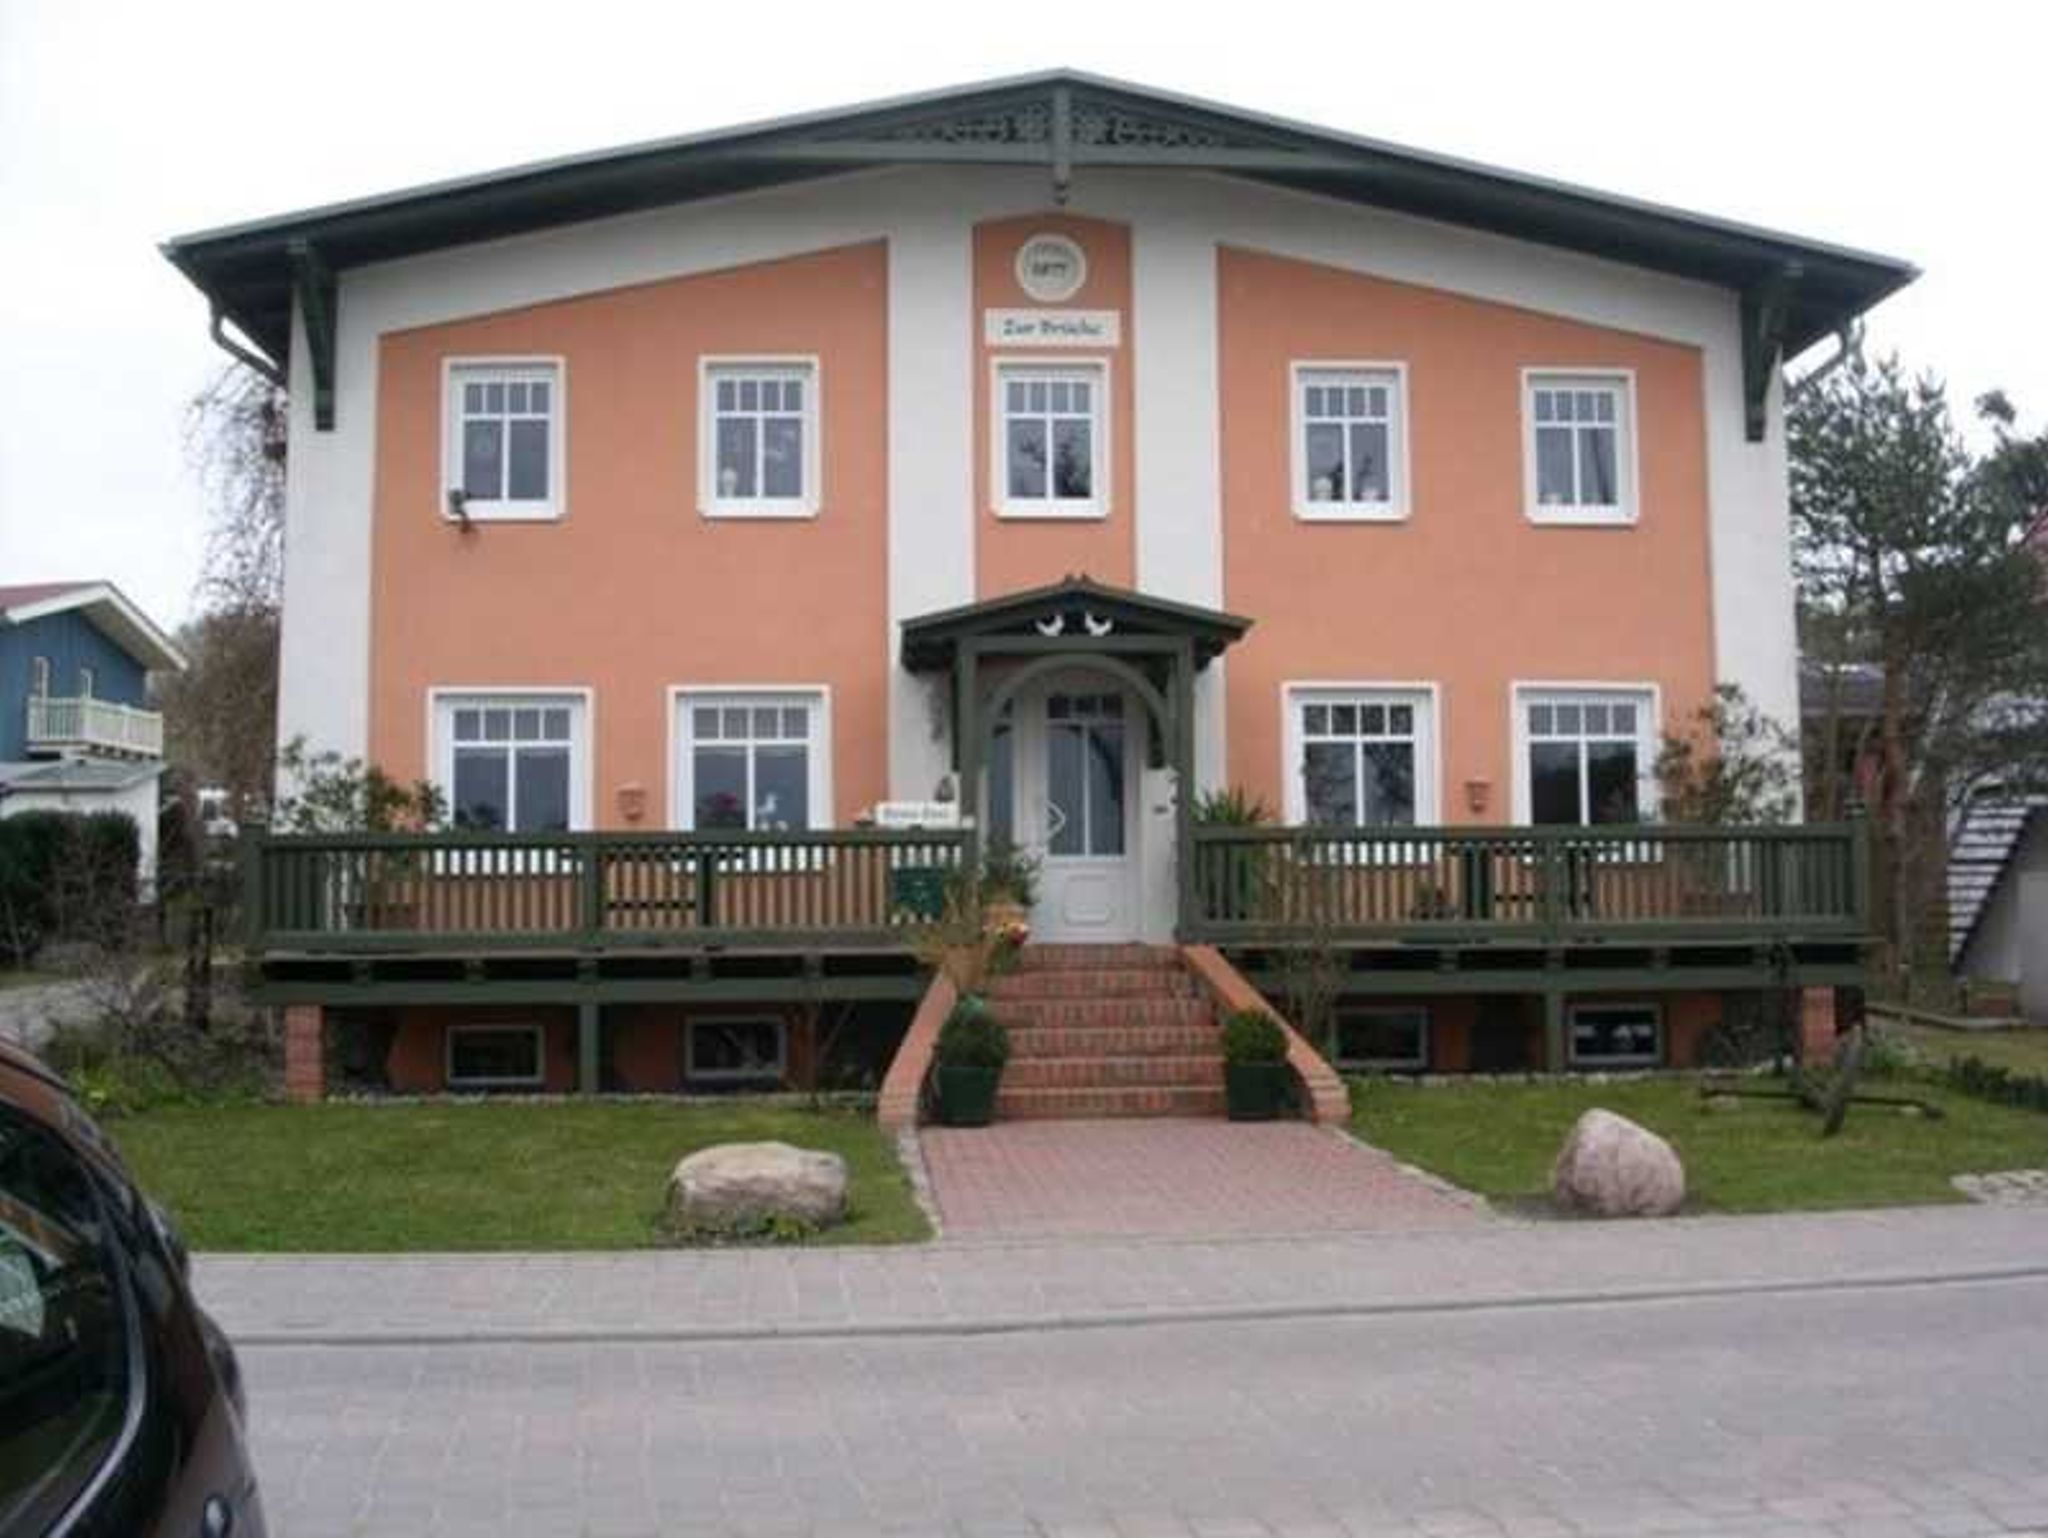 Villa Ernst, der direkte Nachbar